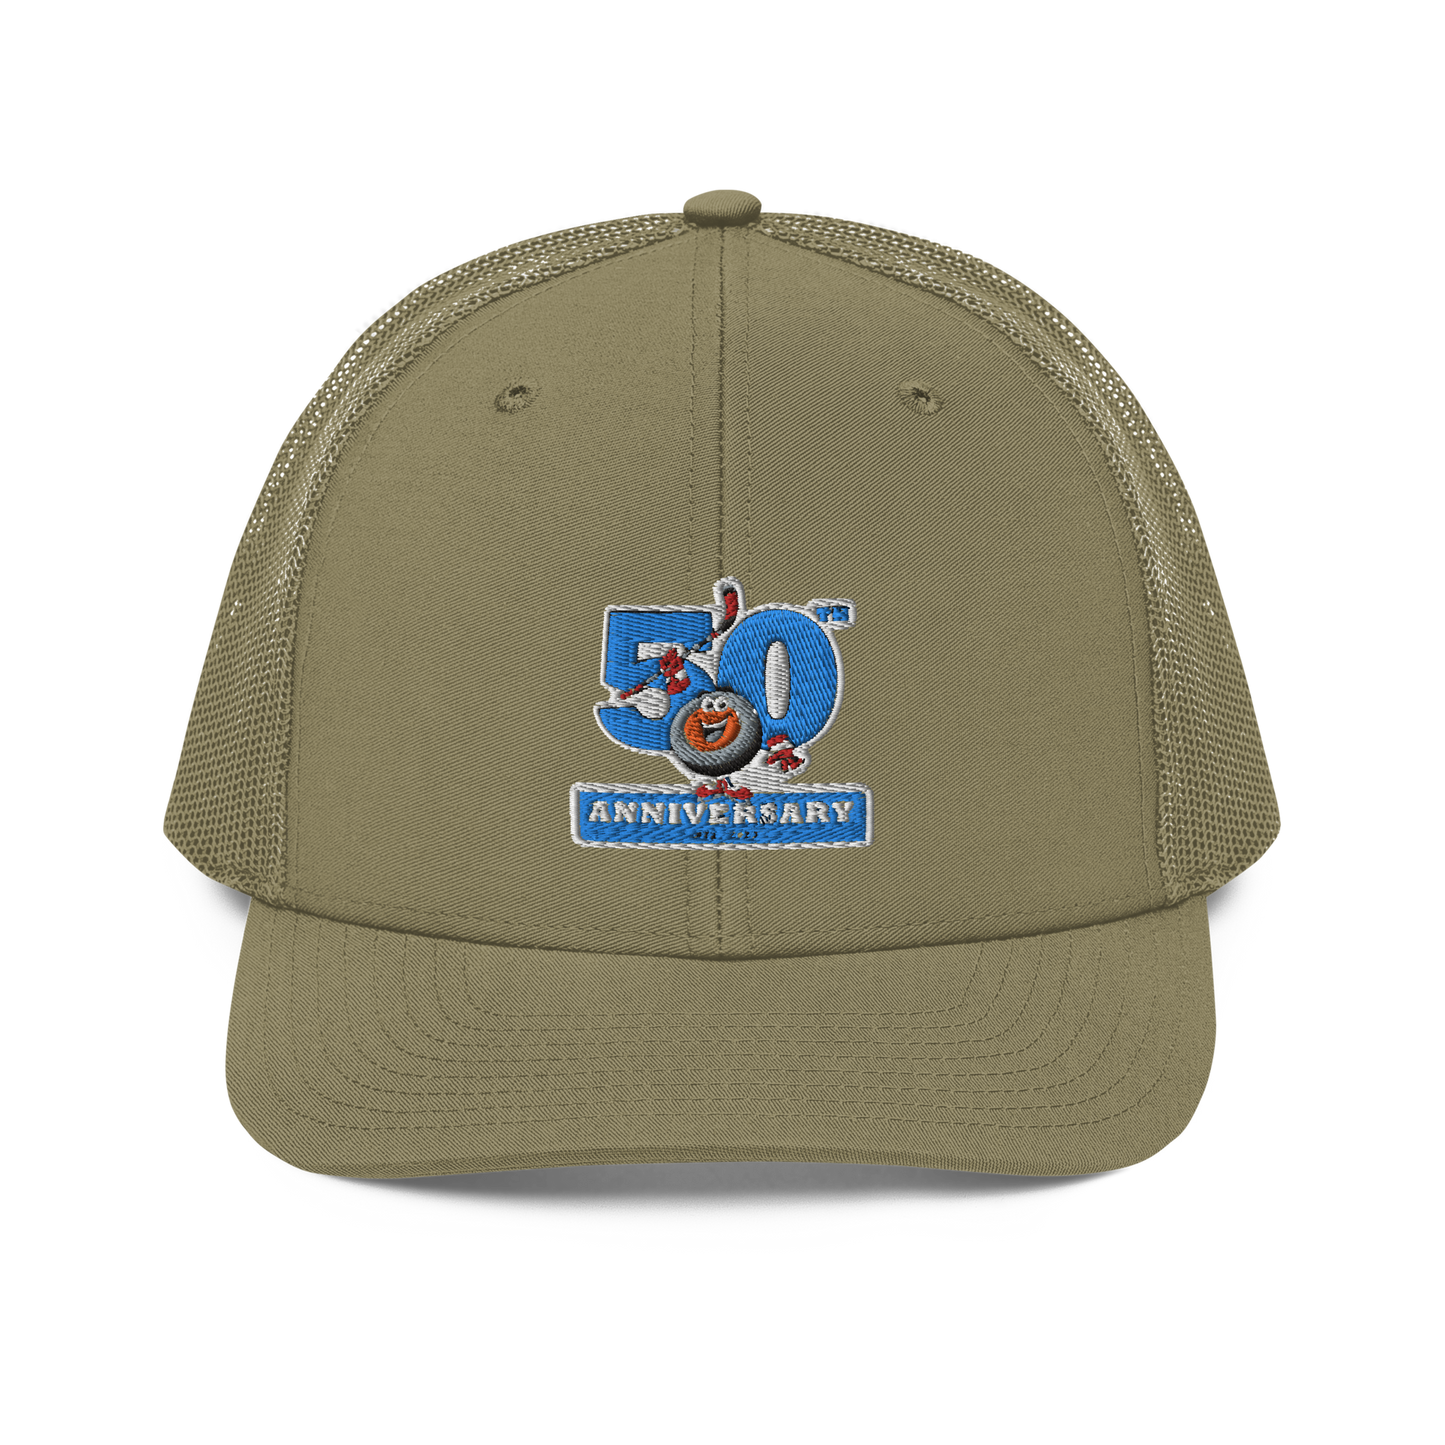 Peter's 50th Anniversary Trucker Hat